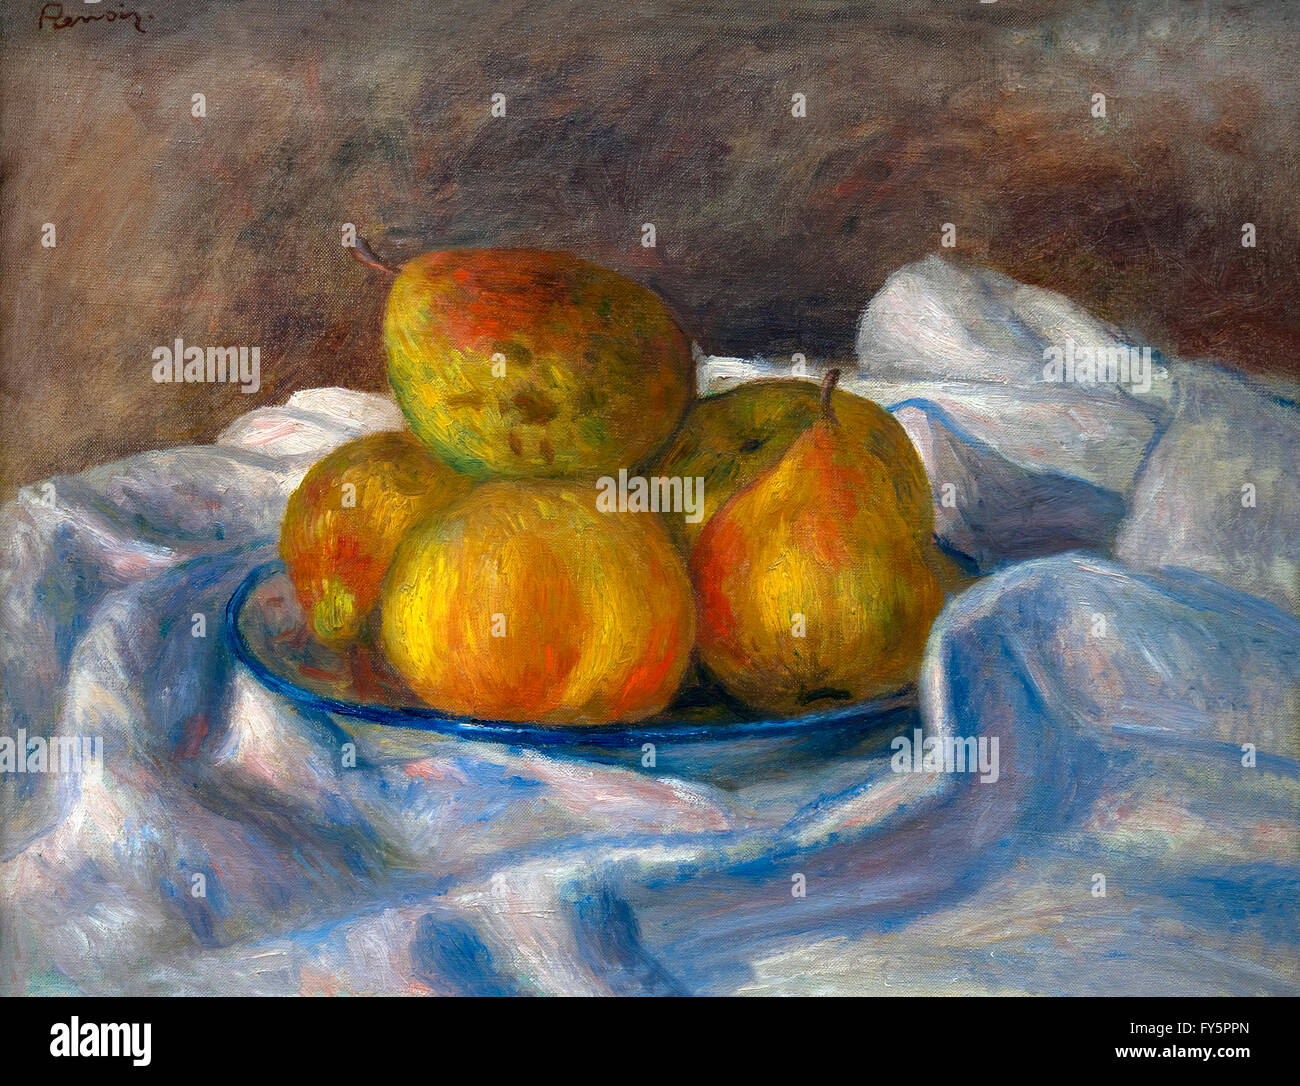 Apples and Pears, Pommes et Poires, by Pierre-Auguste Renoir, 1890-95,Musee de L'Orangerie, Paris, France, Europe Stock Photo